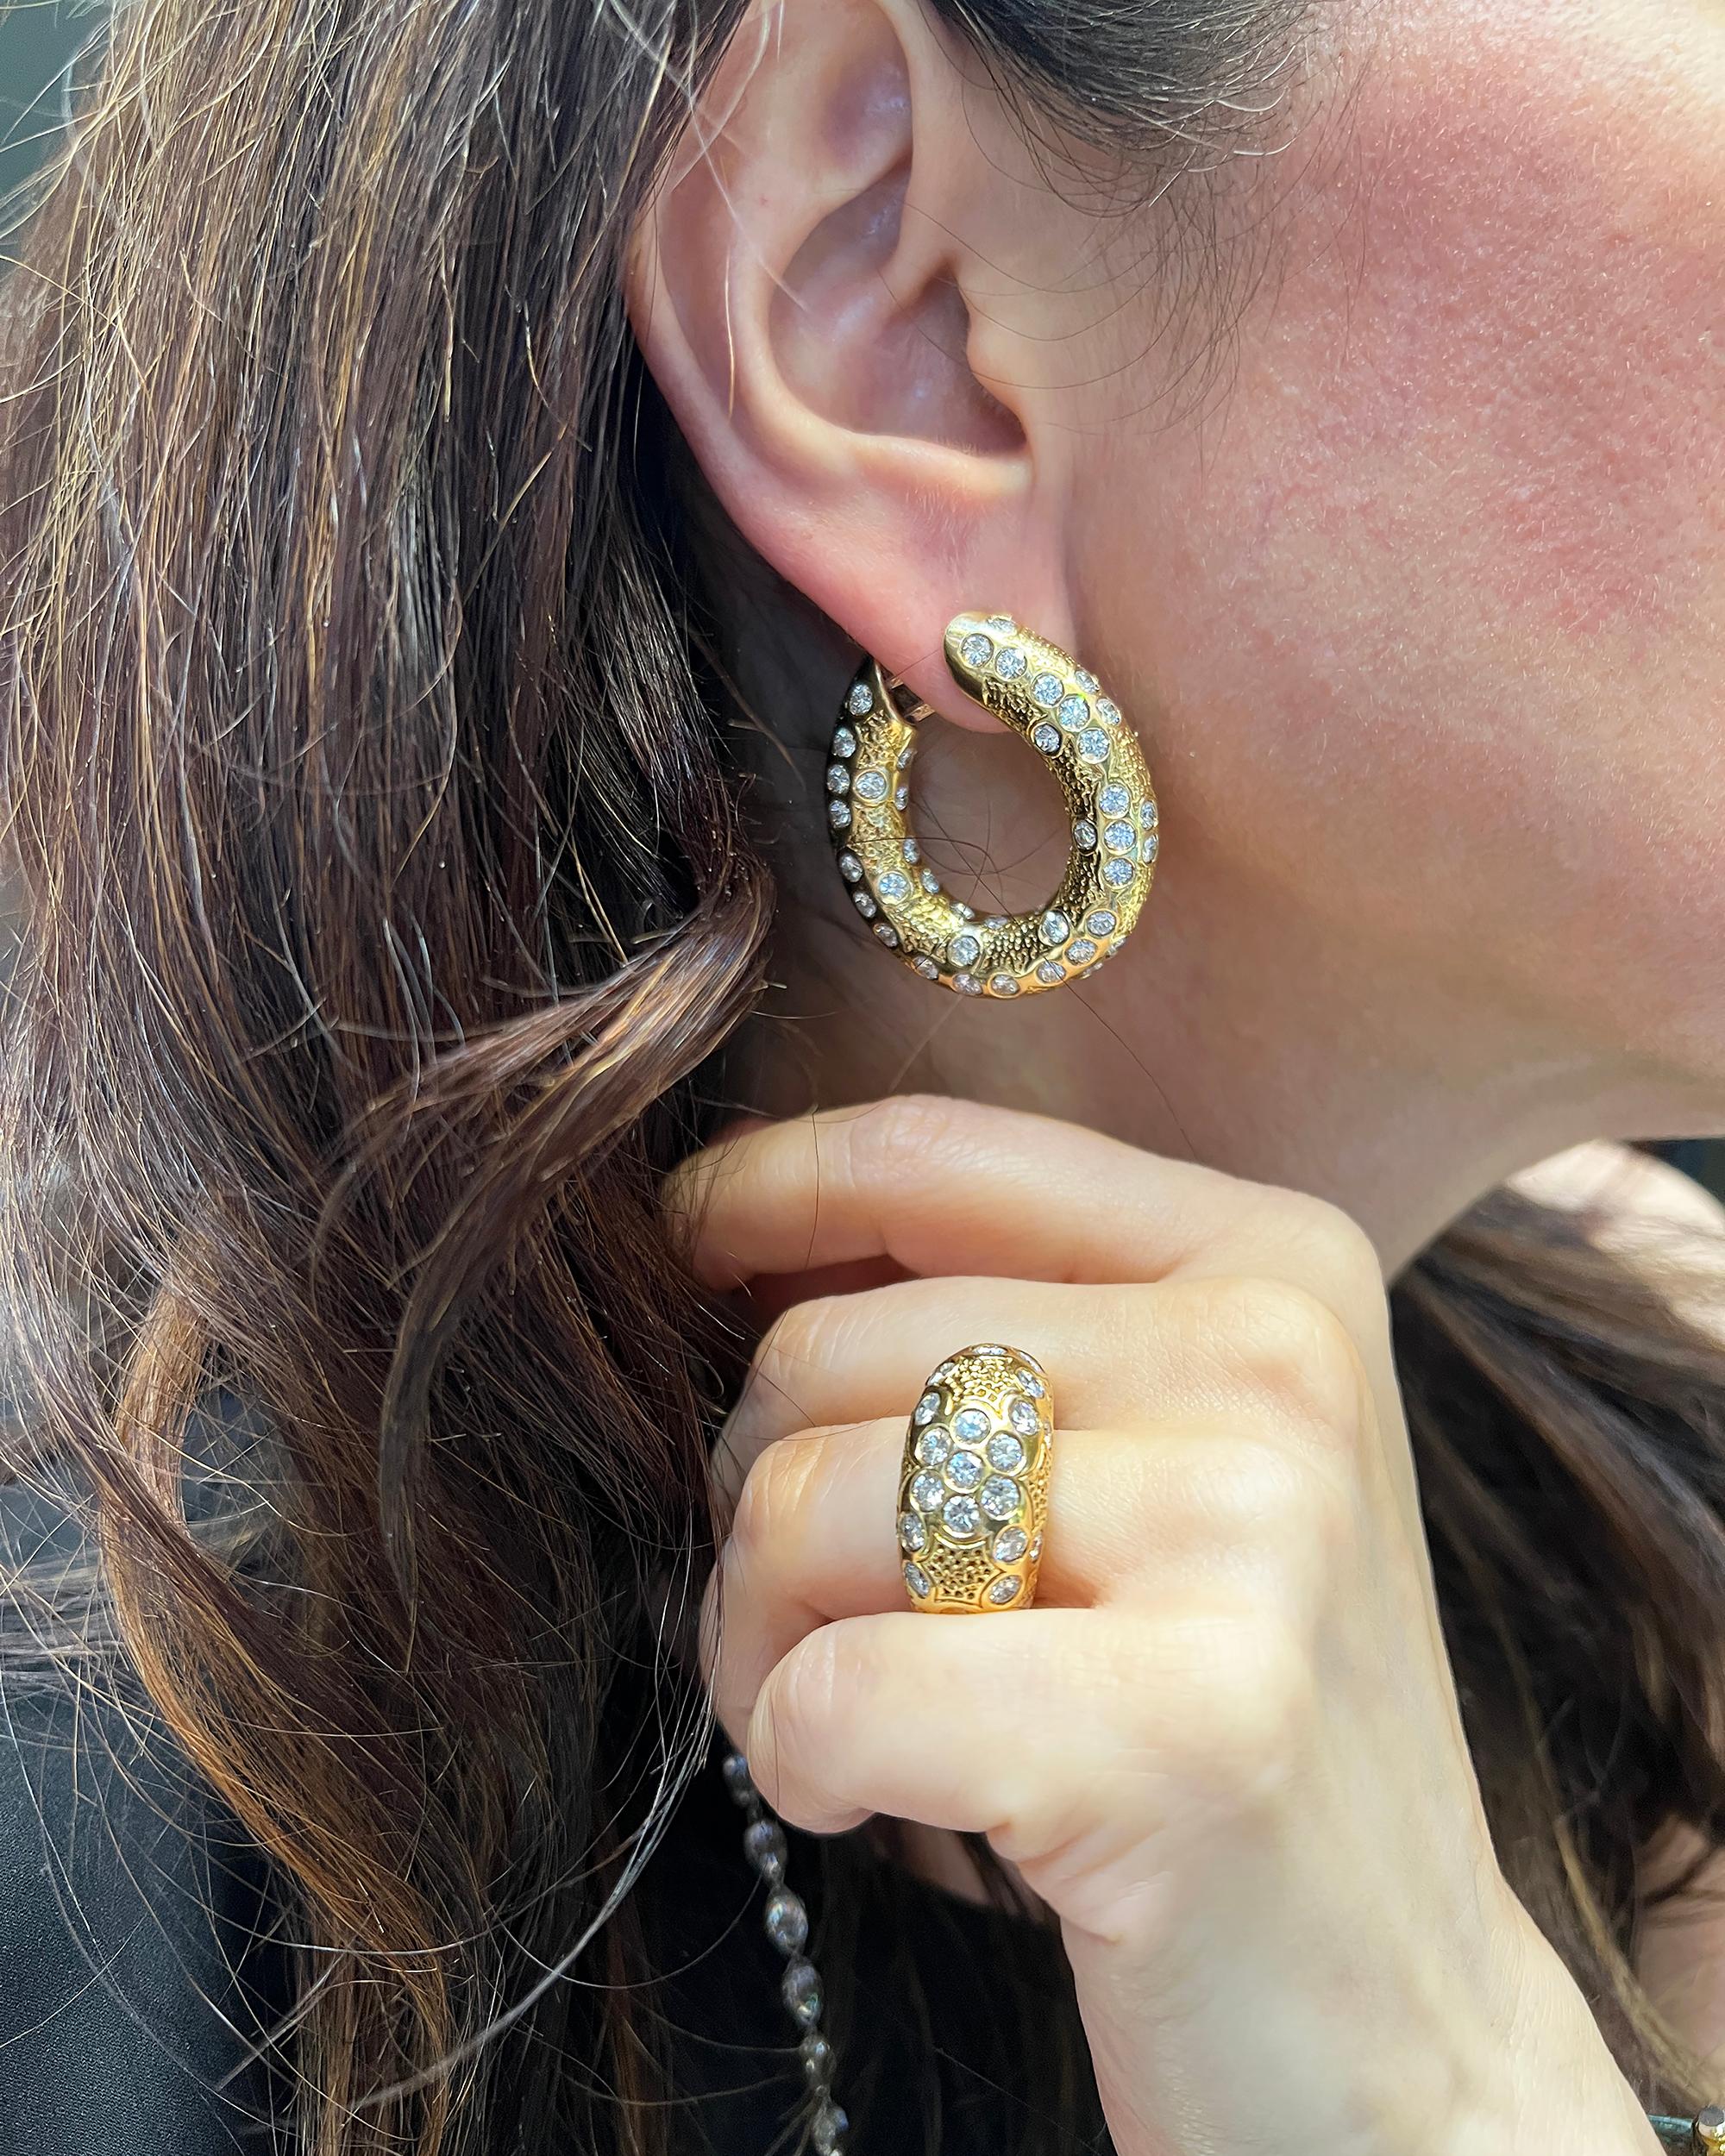 Une suite de bijoux vintage comprenant les boucles d'oreilles et la bague, créée par Van Cleef & Arpels dans les années 1970.
Les boucles d'oreilles sont incrustées de diamants ronds, pesant au total 12 carats. 
La bague contient un total de 4,5